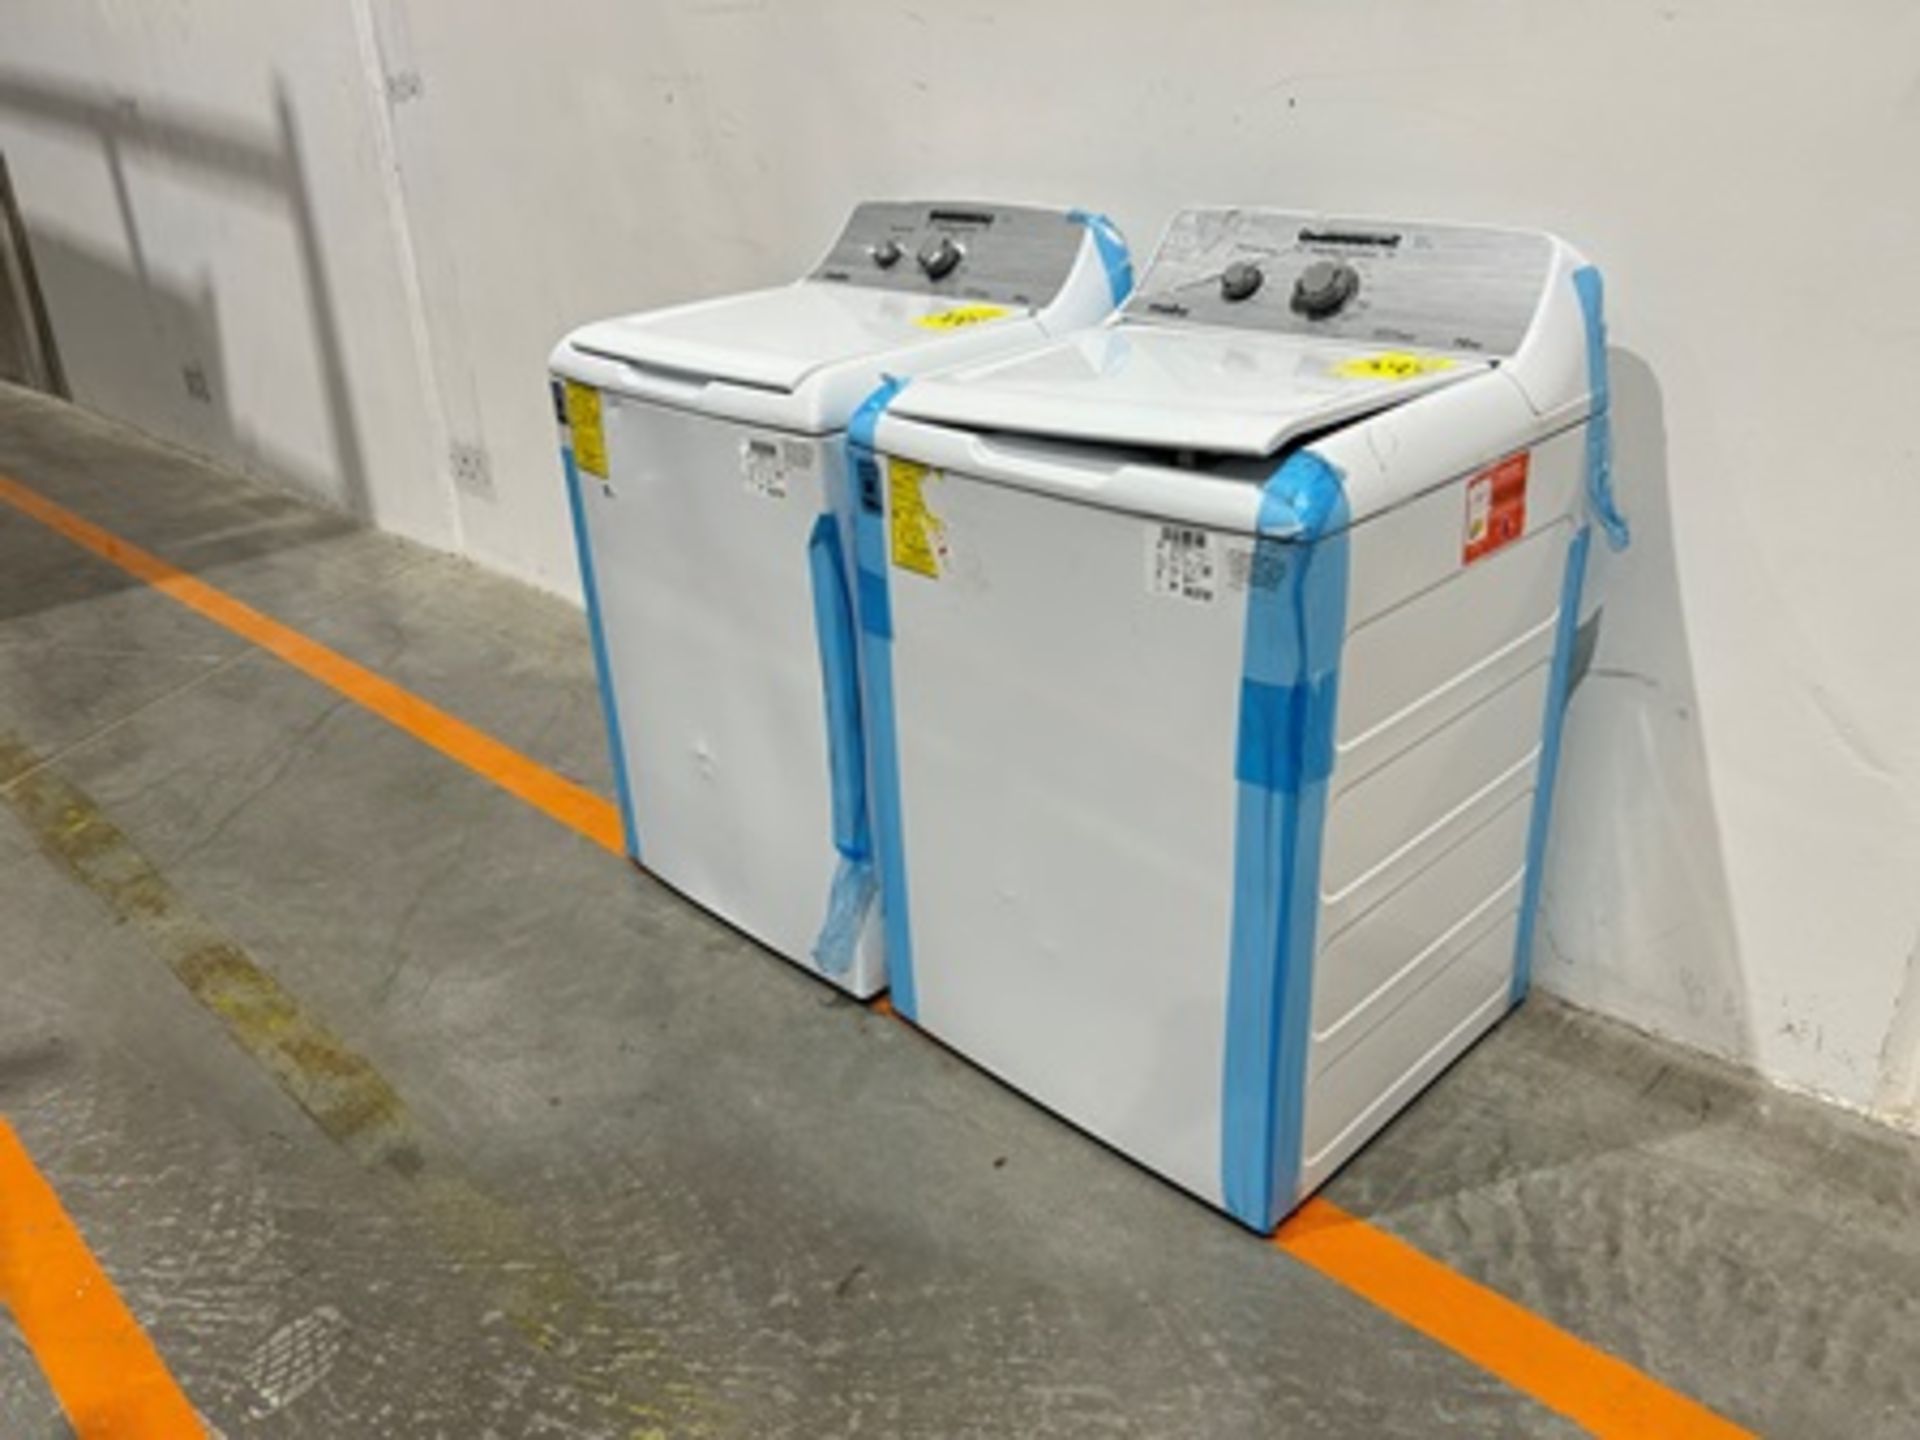 Lote de 2 lavadoras contiene: 1 Lavadora de 16 KG Marca MABE, Modelo LMA76112CBAB02, Serie S91208, - Image 3 of 11